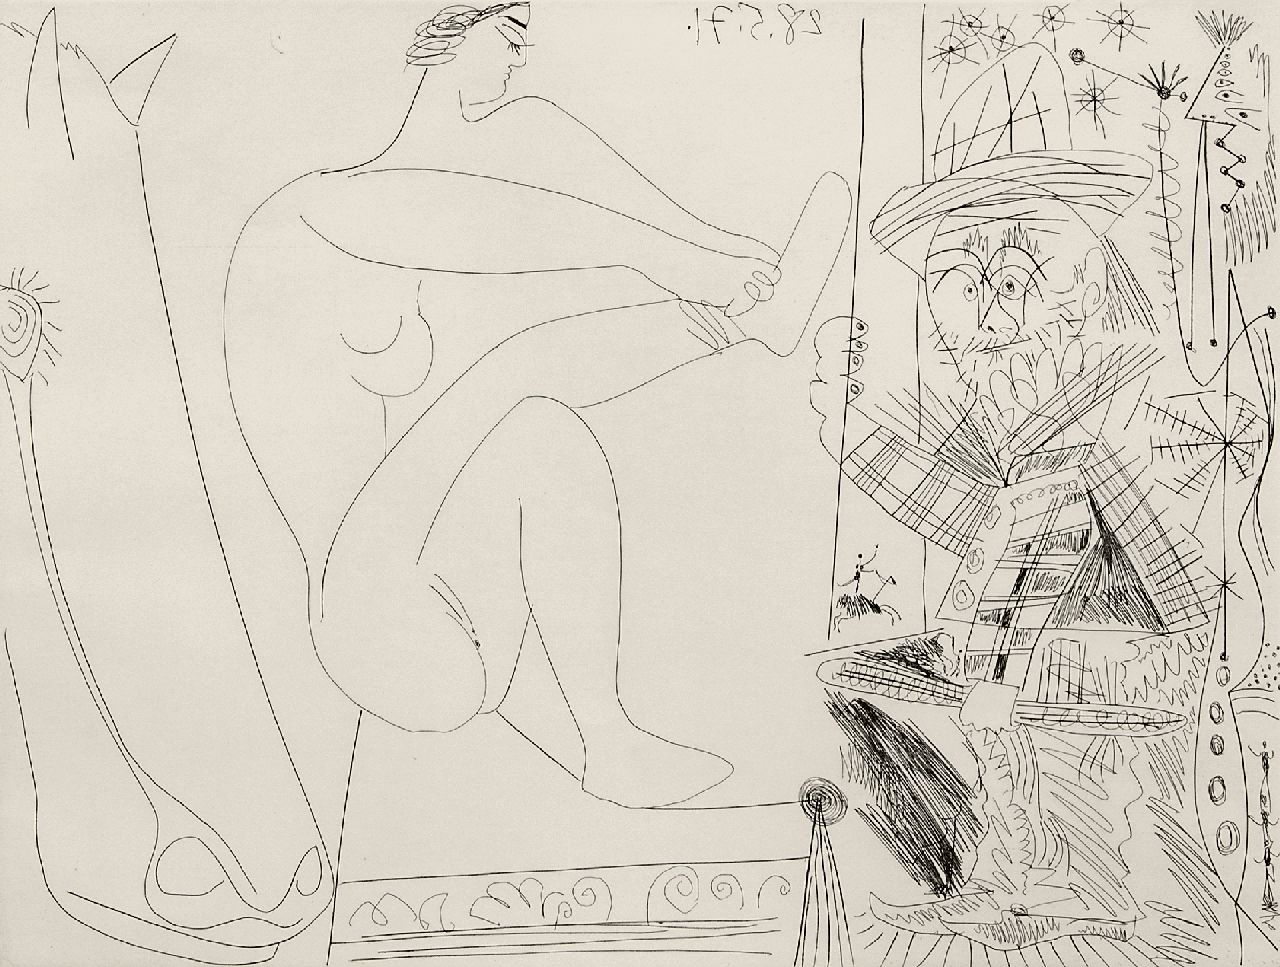 Picasso | Au cirque. Écuyère se chaussant dans les coulisses et clown au trapèze, etching, 31.4 x 41.2 cm, signed l.r. with namestamp and dated 28.5.71 (in the plate)